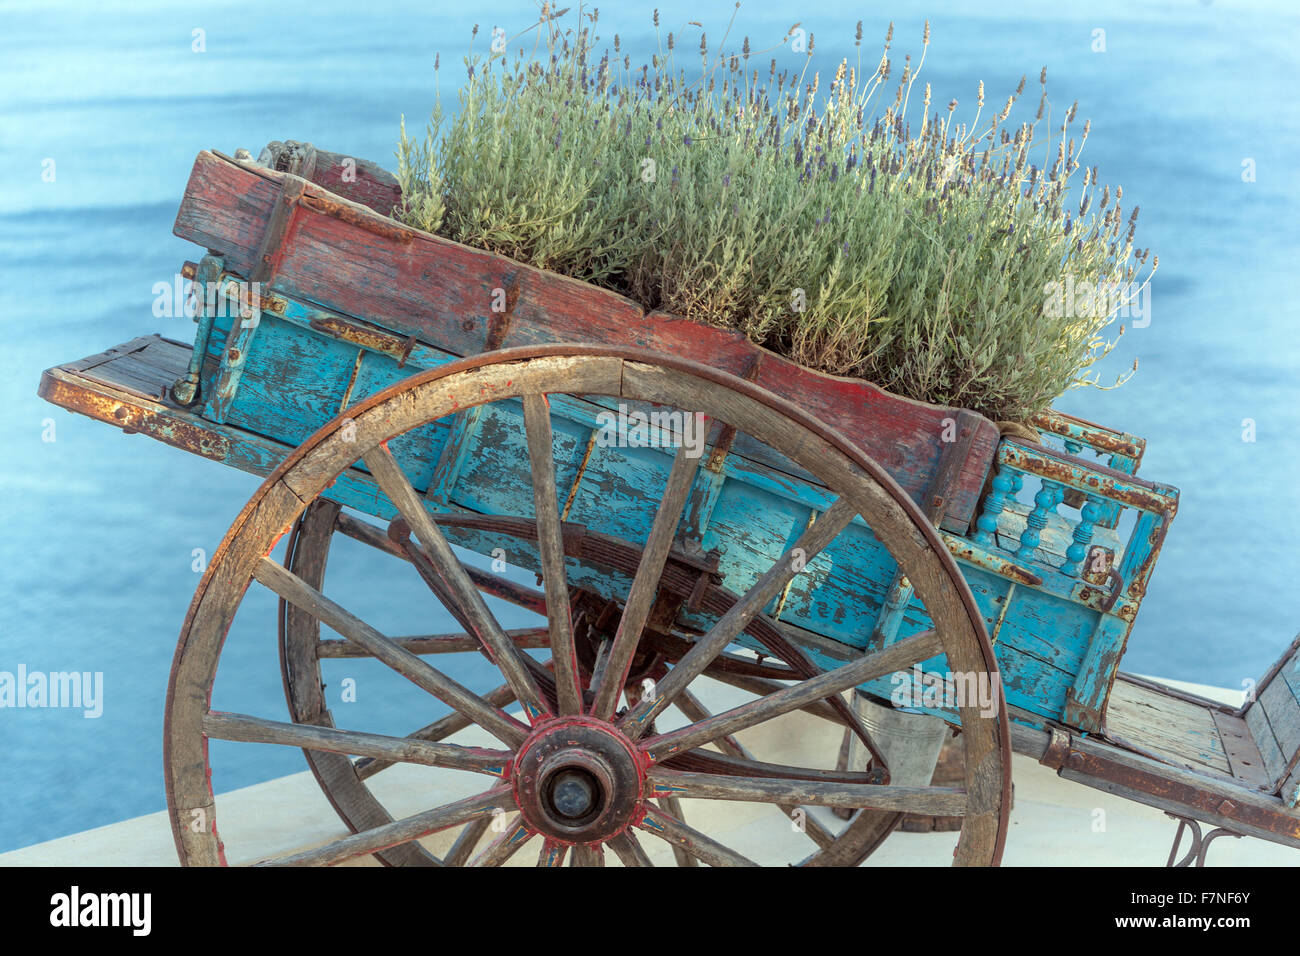 Lavendel Wohlbefinden, wächst in einem alten dekorativen Wagen Oia Santorini Kykladen griechische Inseln Griechenland Holzwagen auf dem Dach über dem Meer Holzwagen Stockfoto